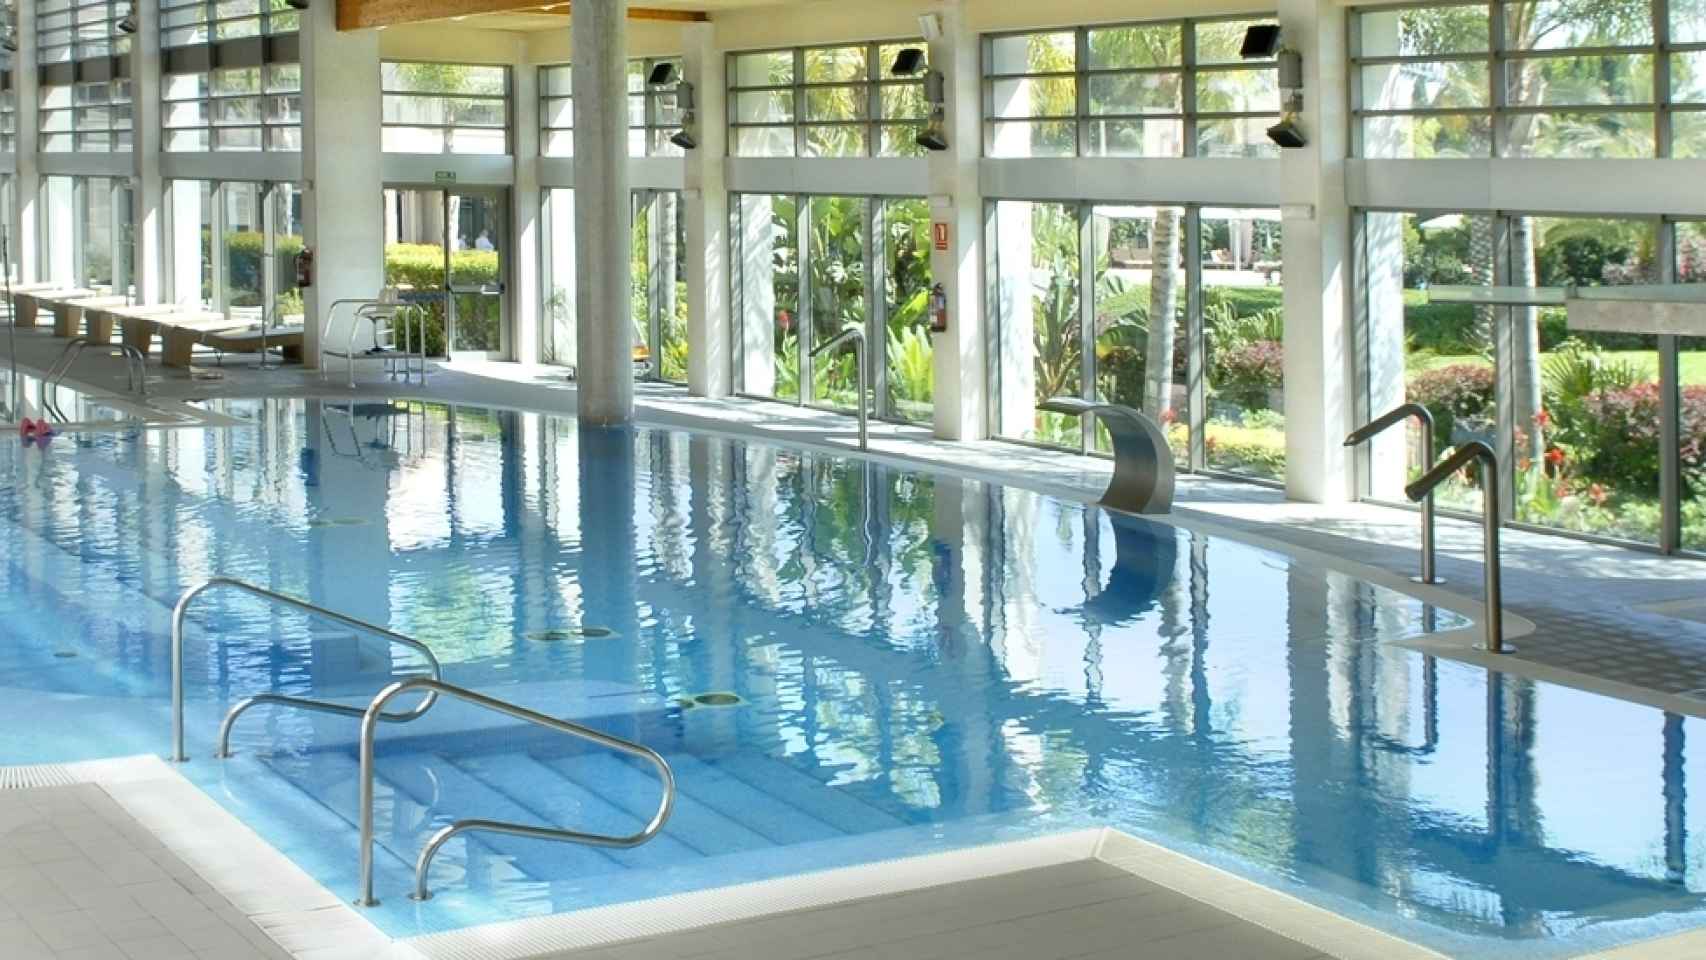 Una de las piscinas termales en el hotel La Calderona.